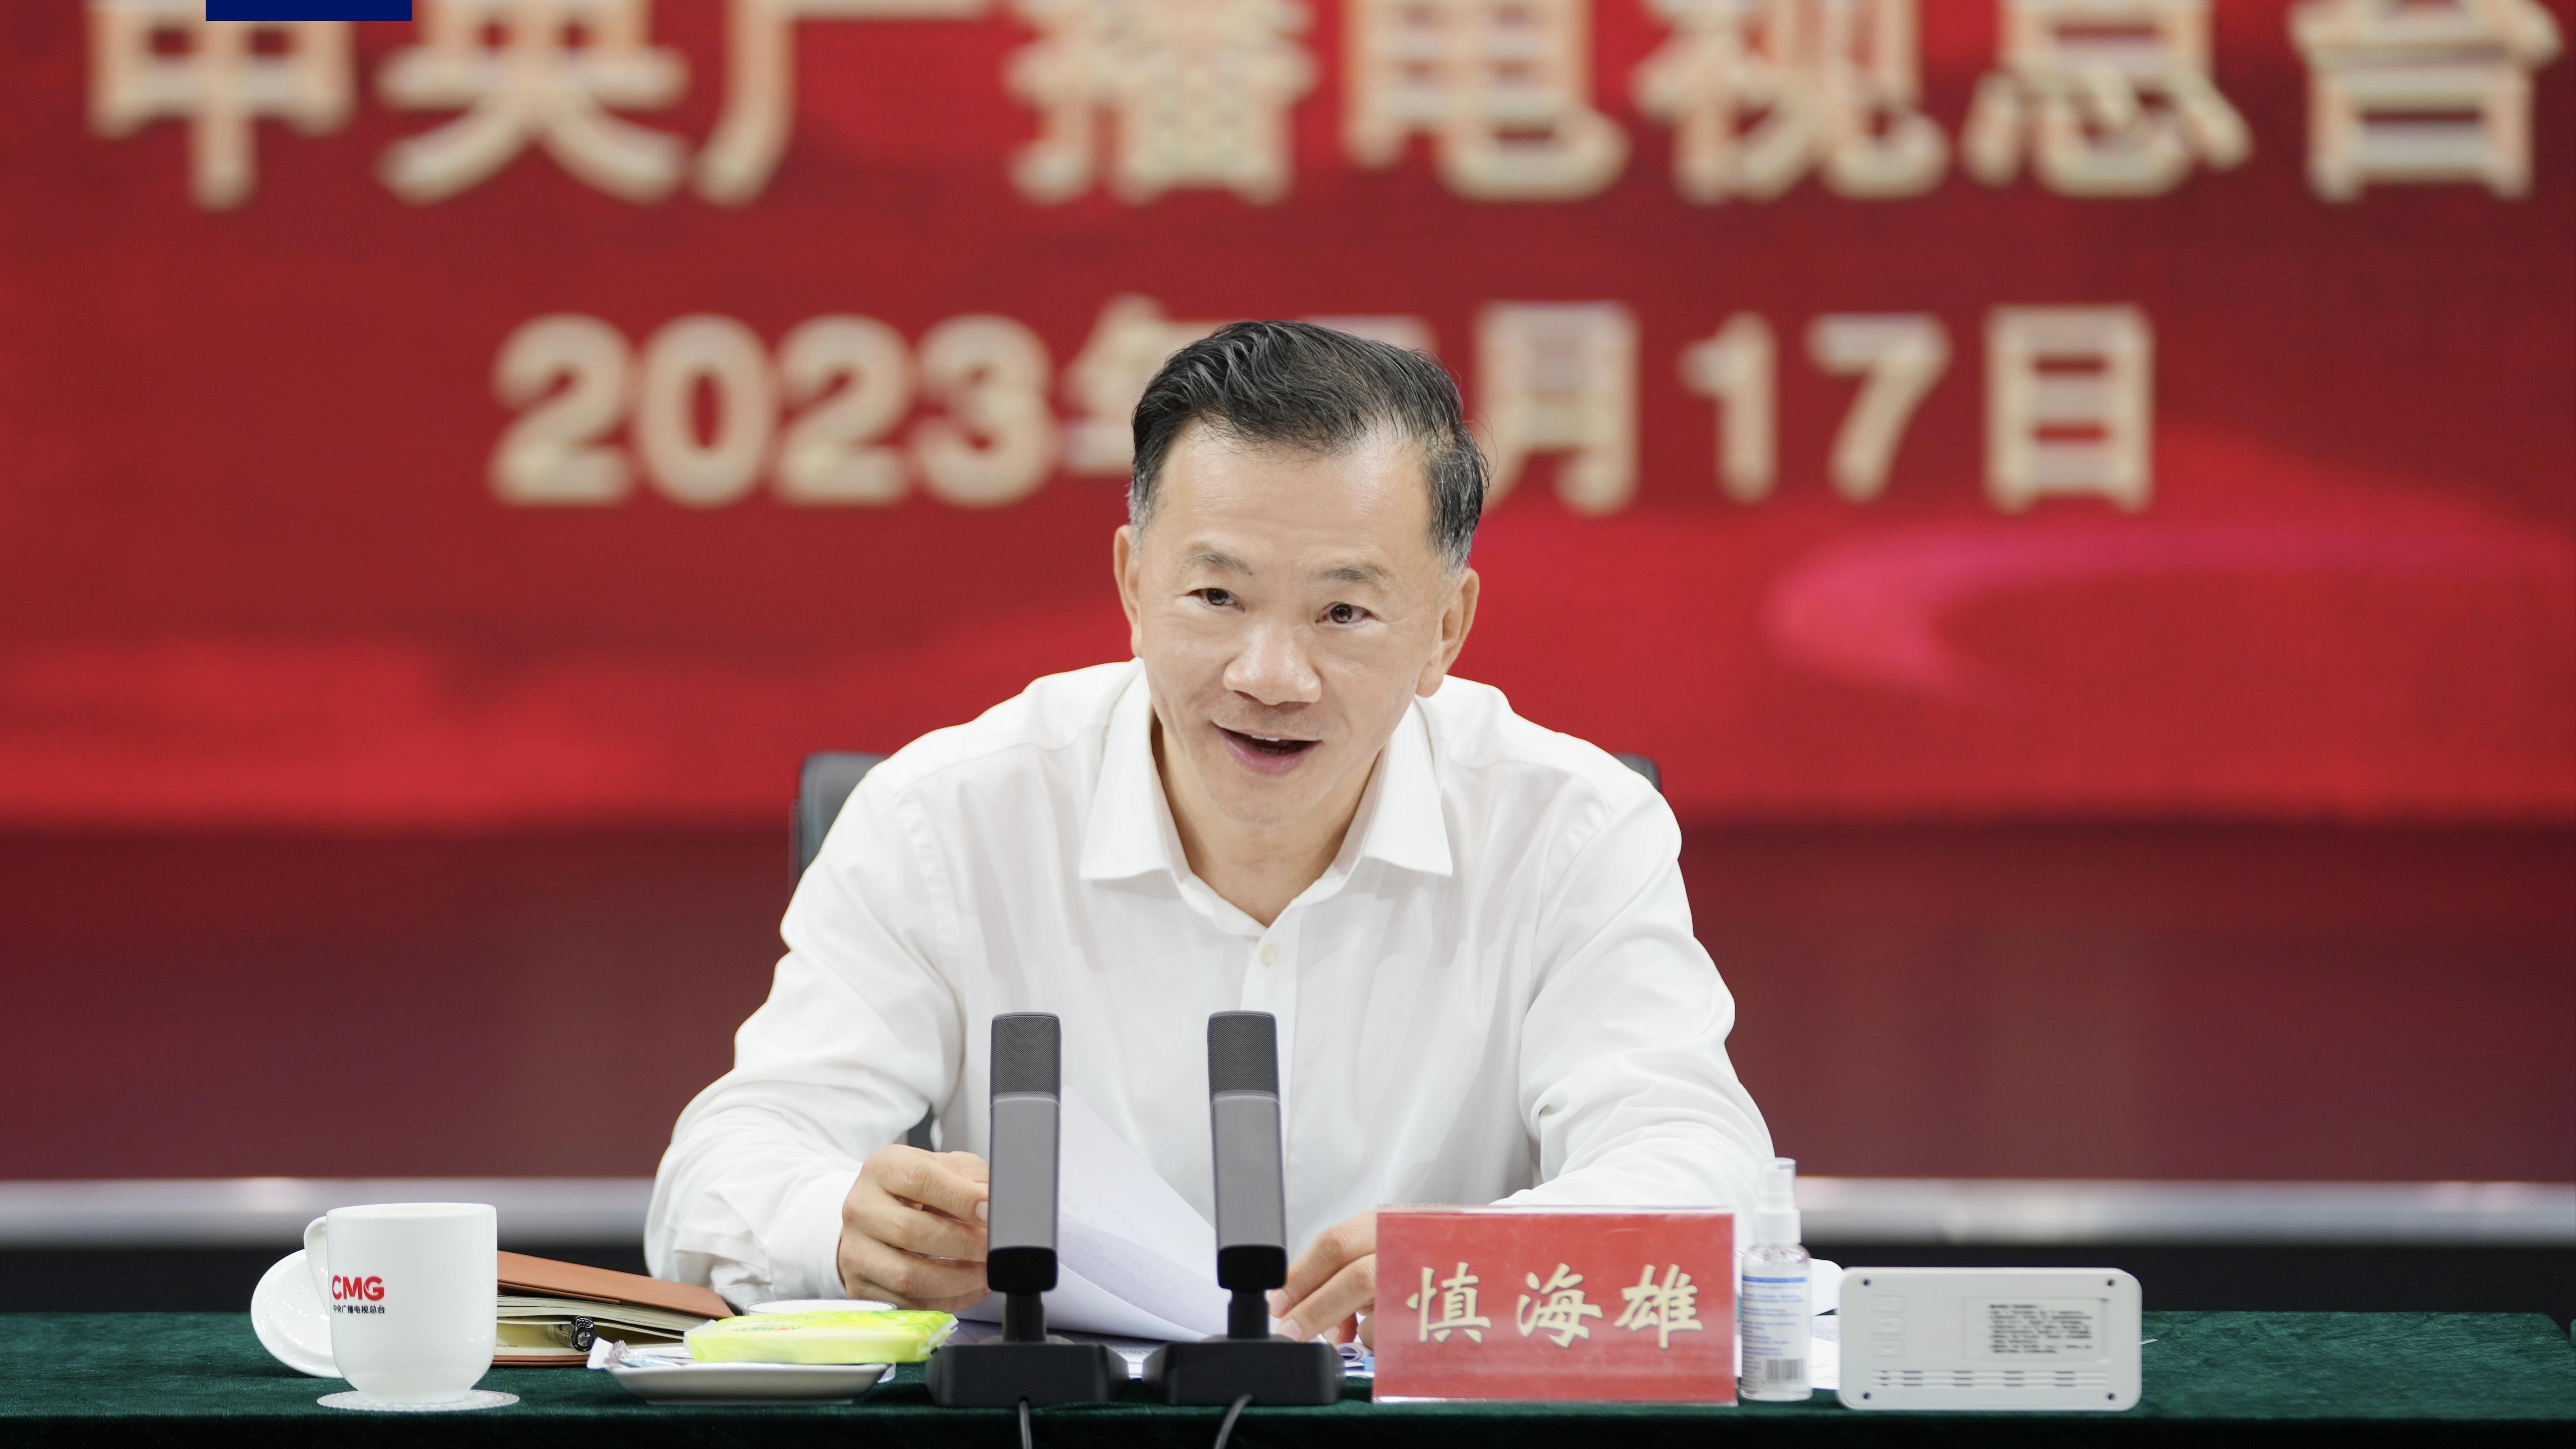 सीएमजीको ‘चीनको सुलेखन महाधिवेशन’ दोस्रो सिजन सुरू